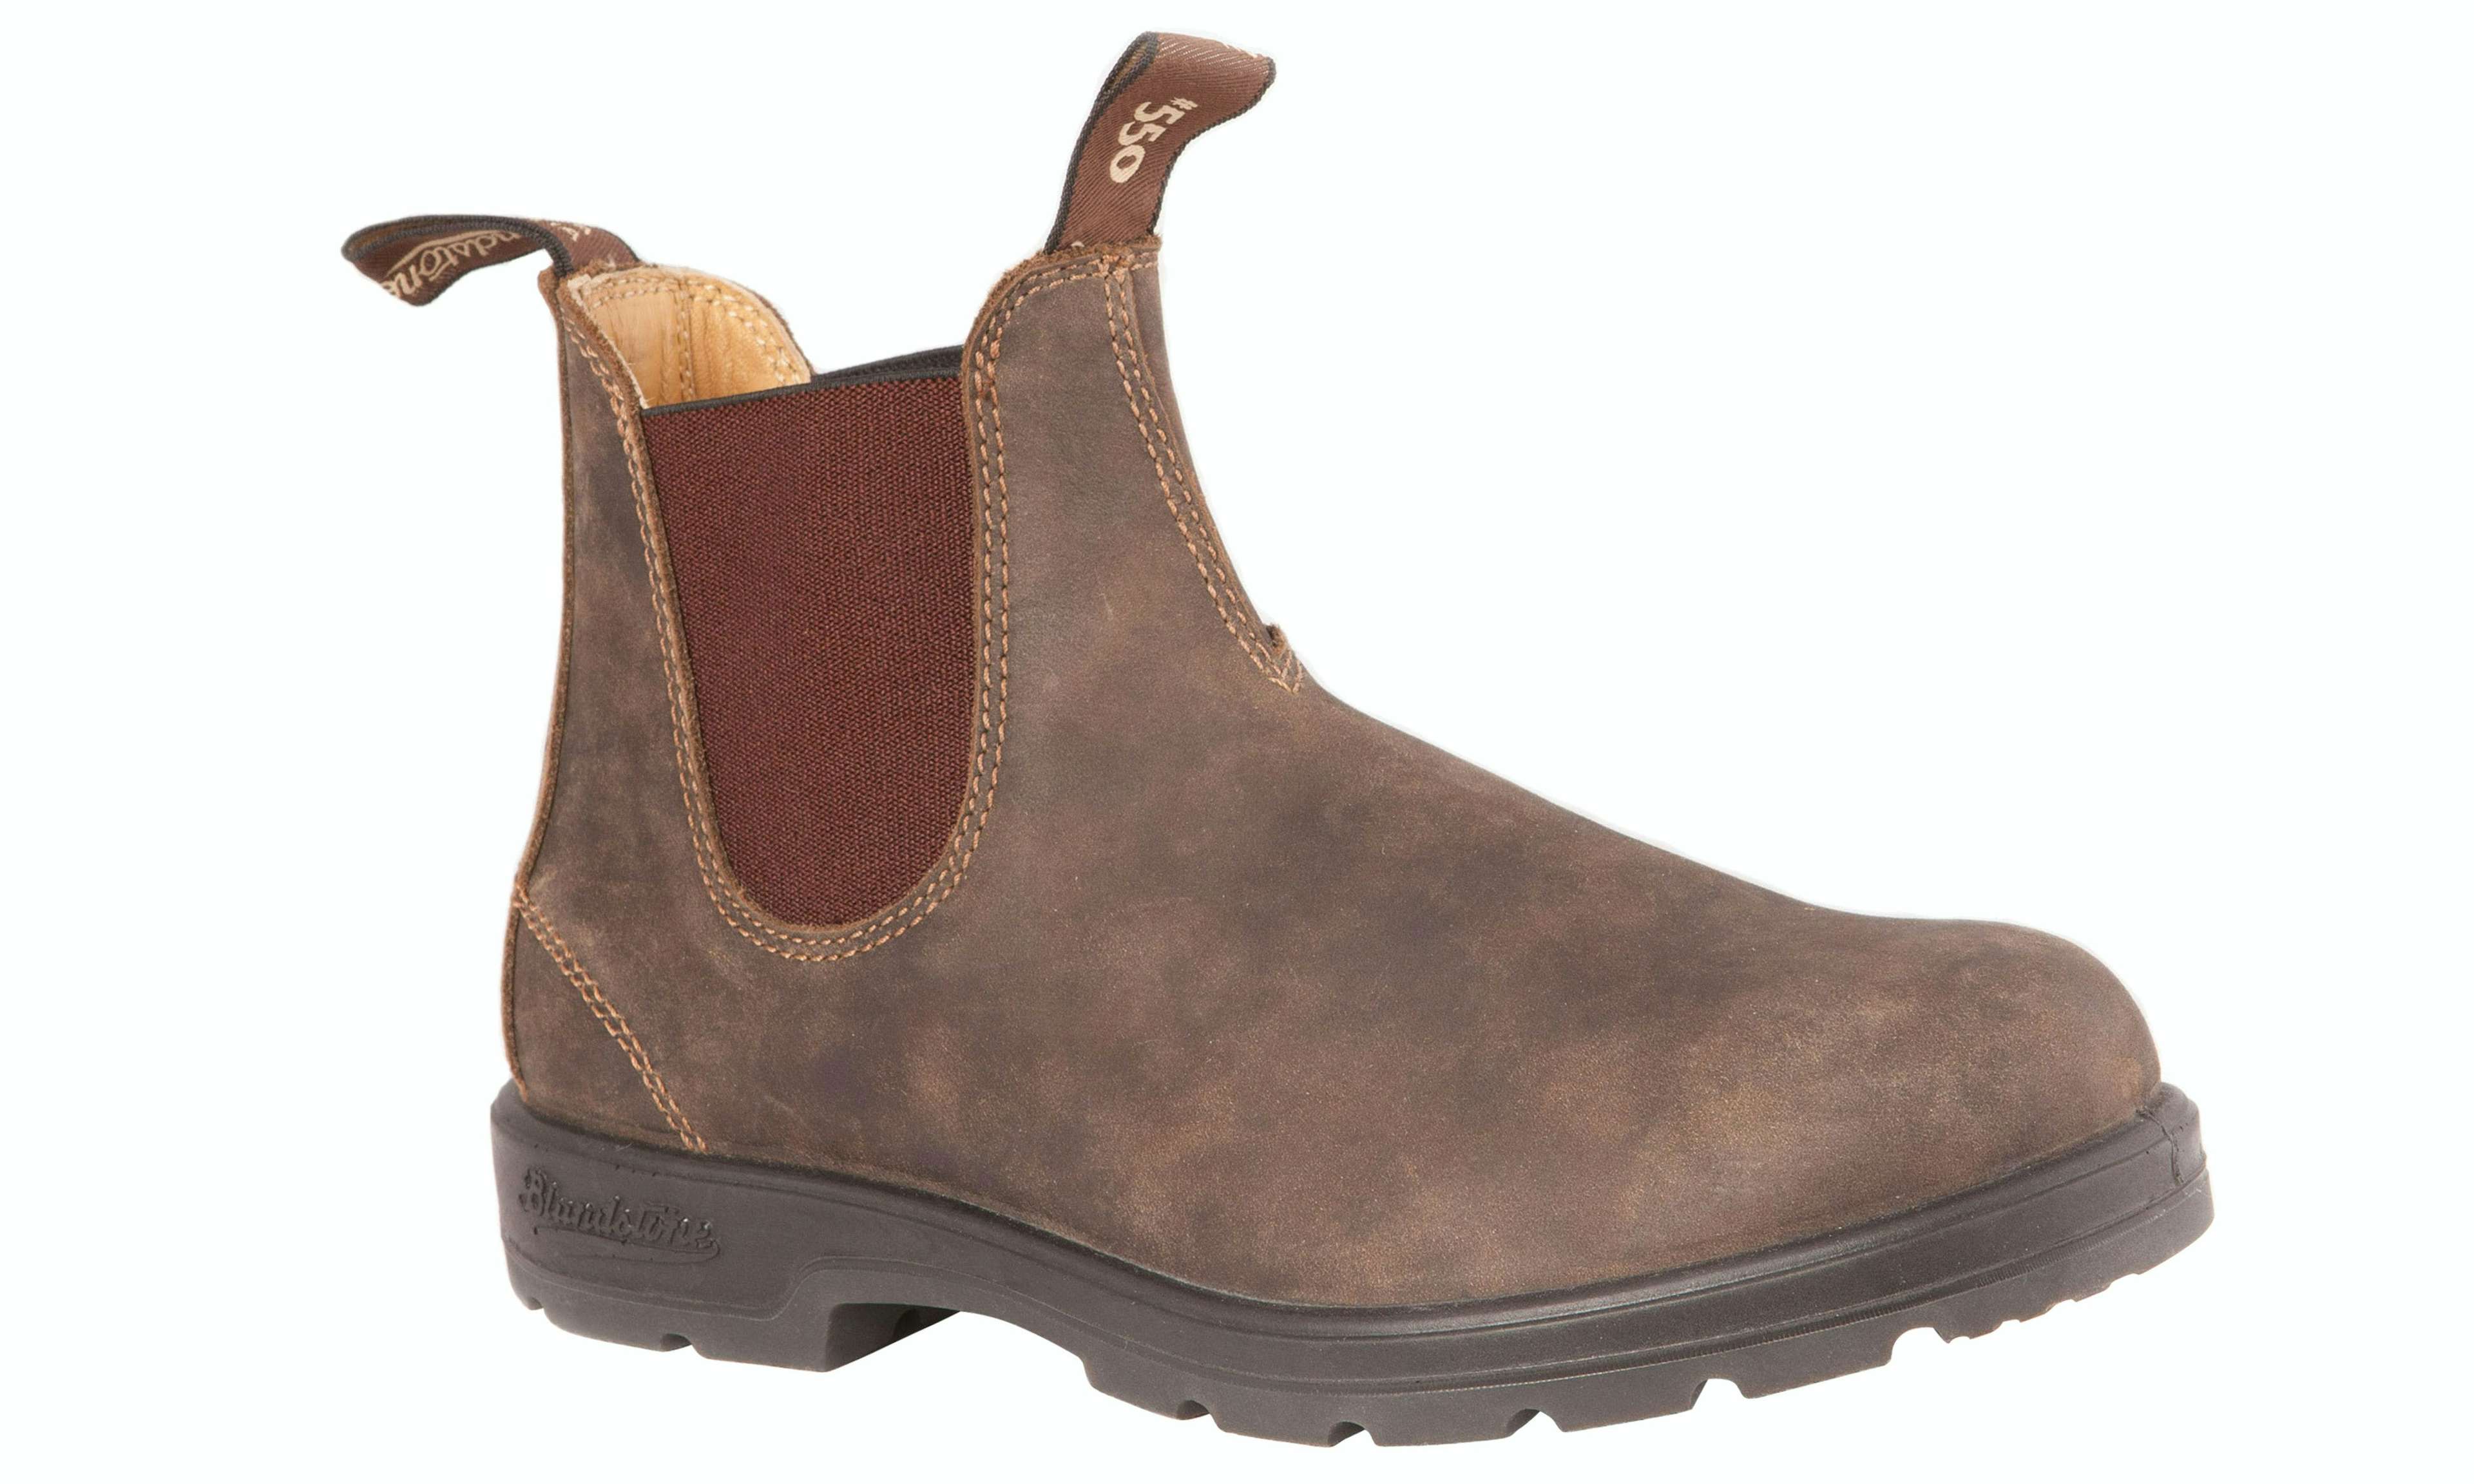 Brown Blundstones boots